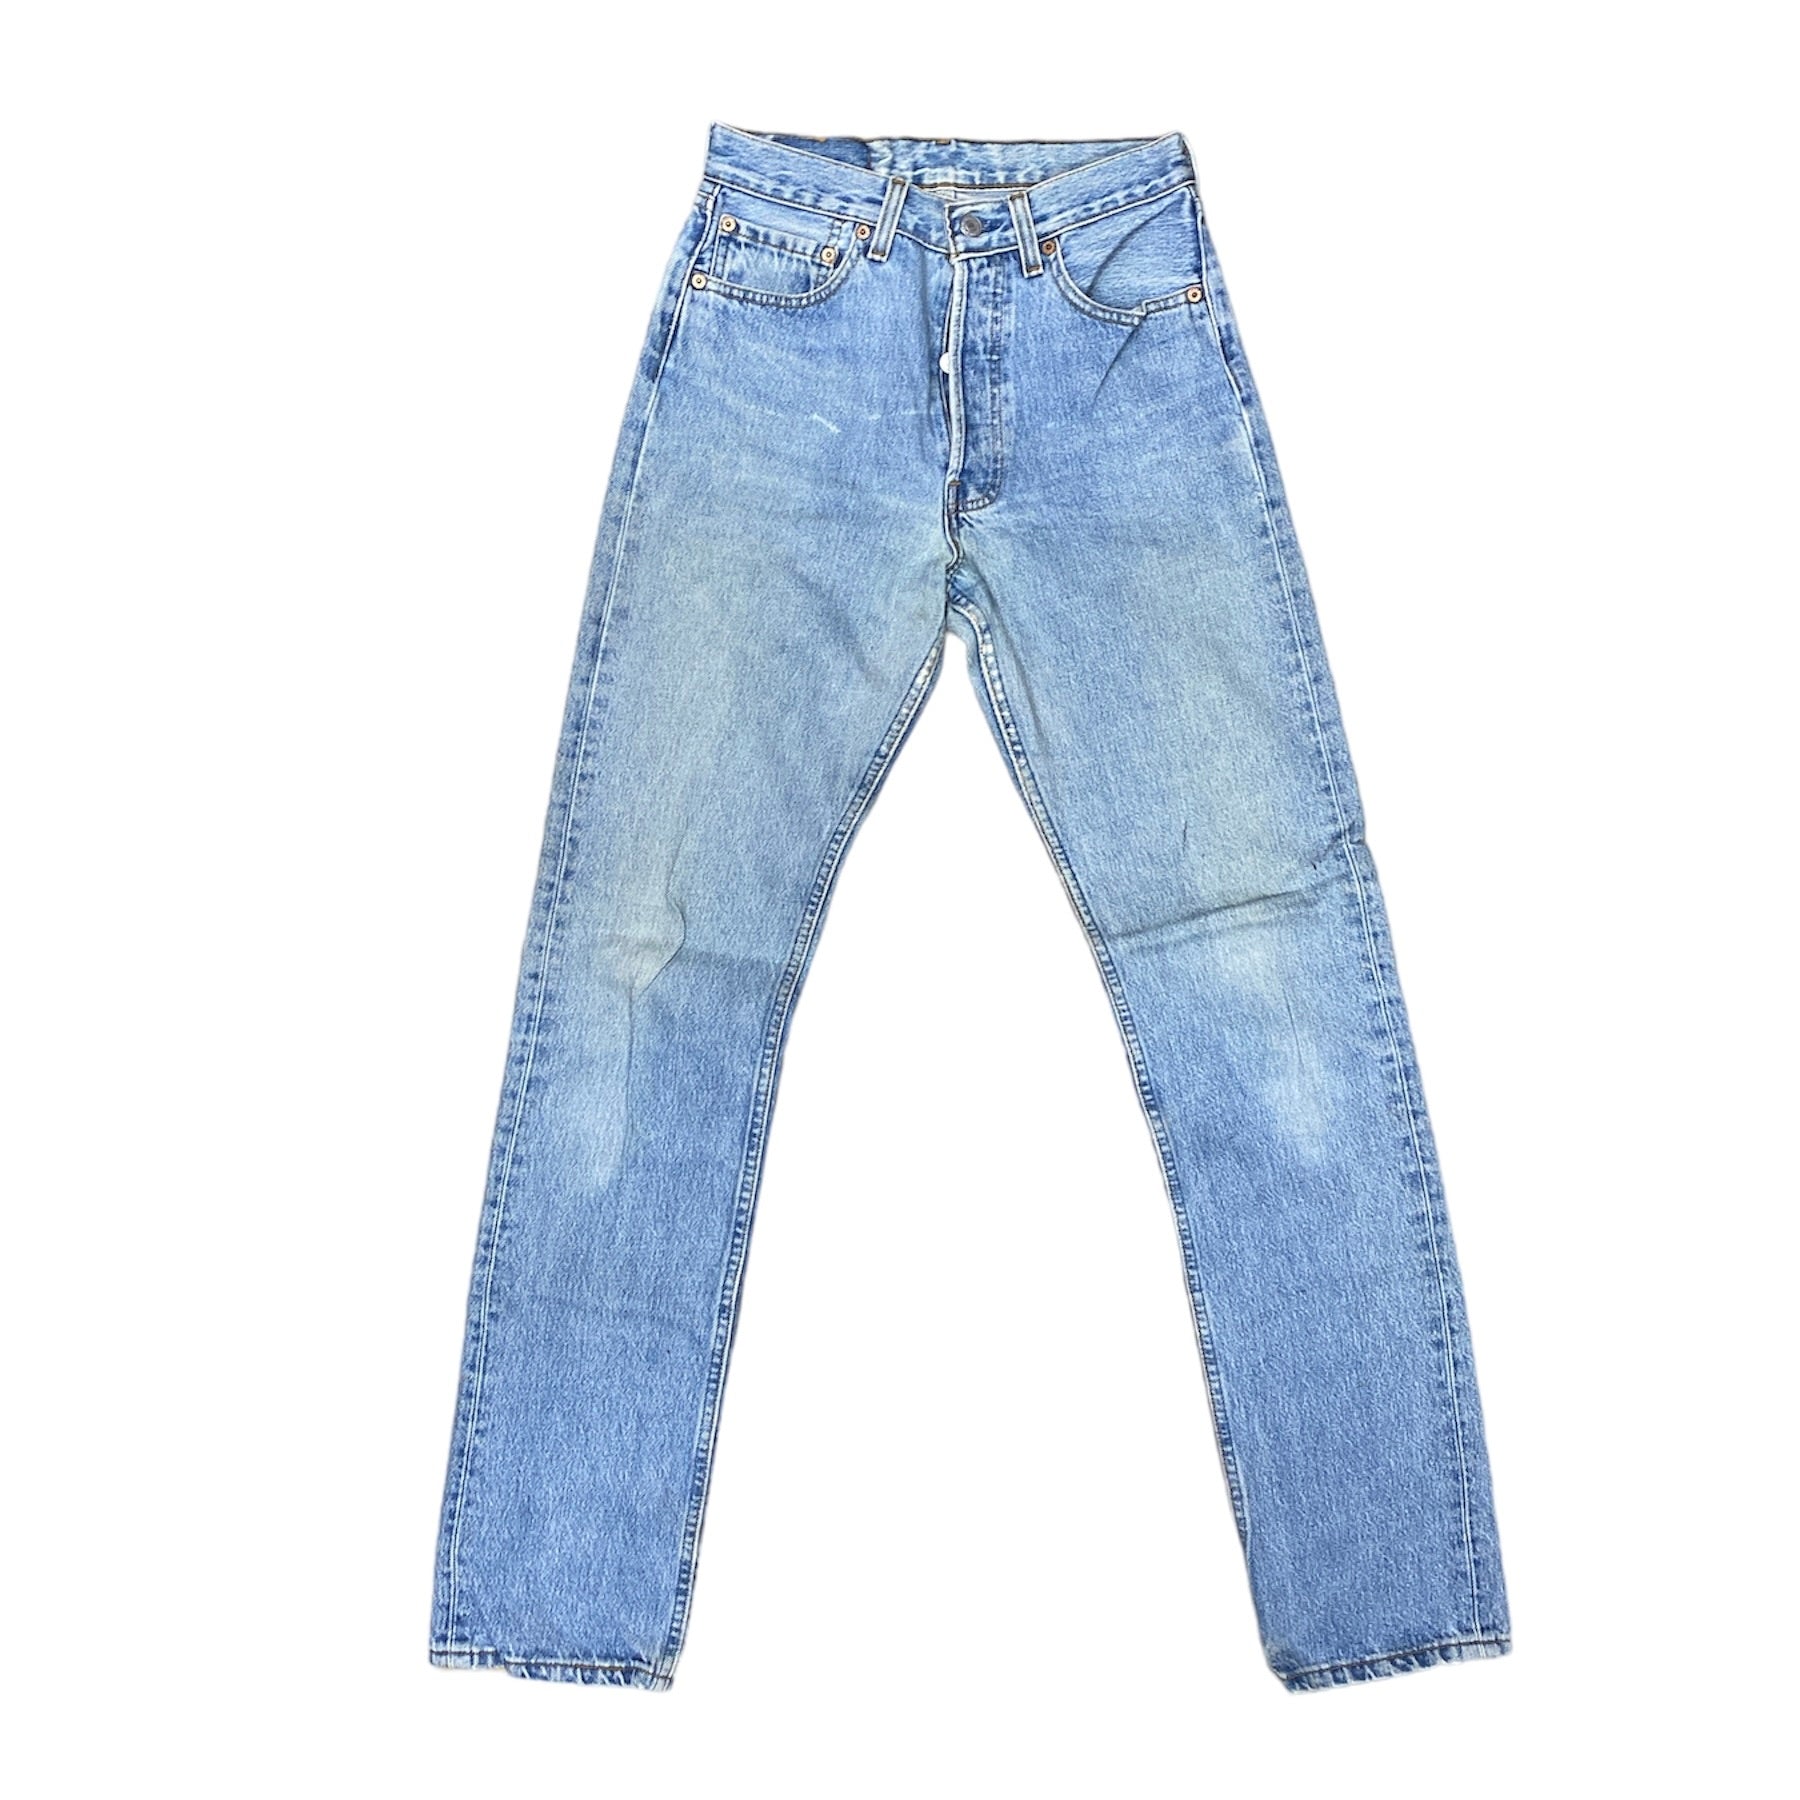 Vintage Levis 501 Light Blue Jeans (W28/L34) (W)